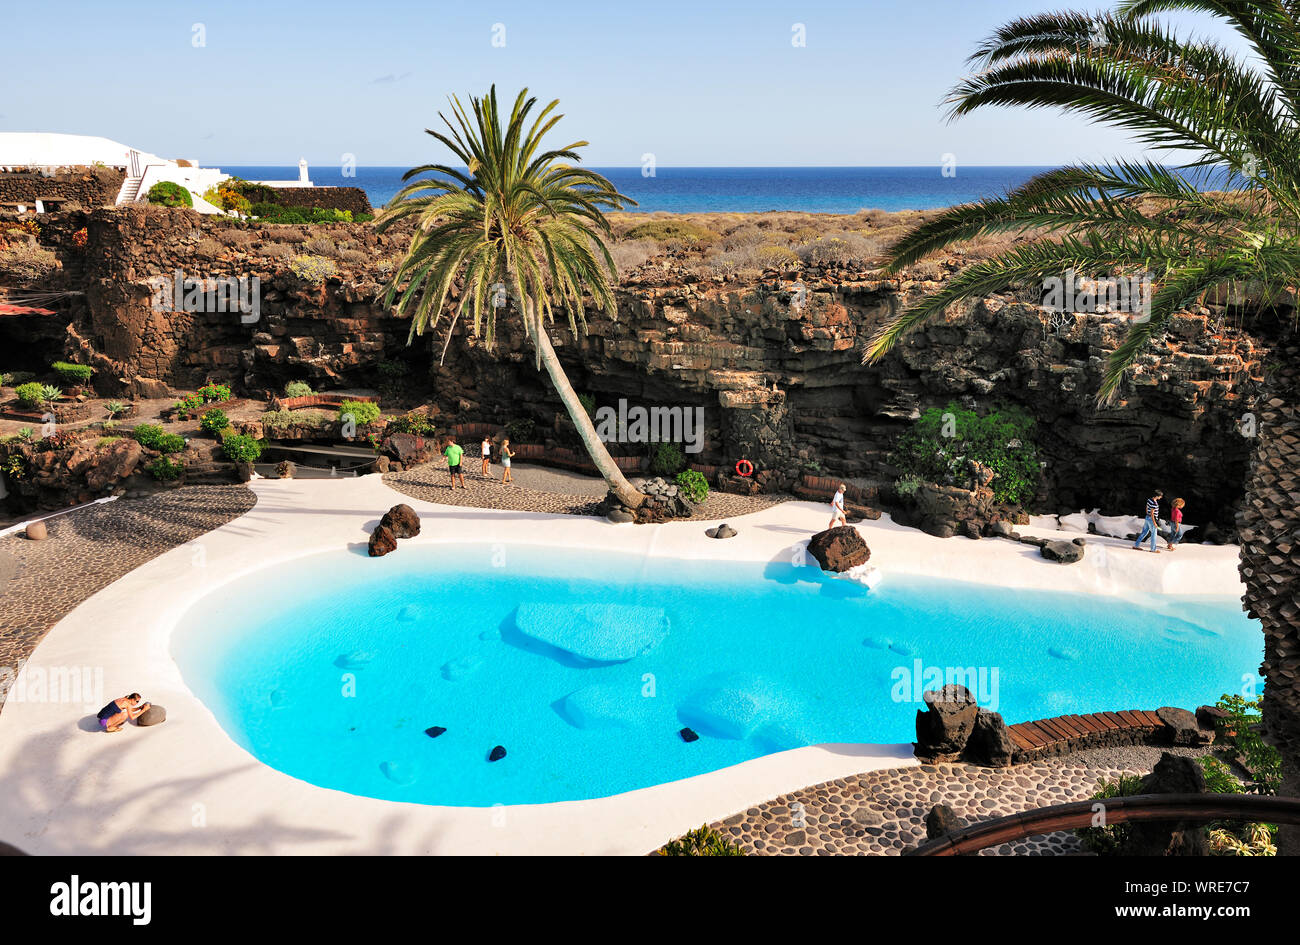 Jameos del Agua (Cesar Manrique). Lanzarote, Canary islands, Spain Stock Photo